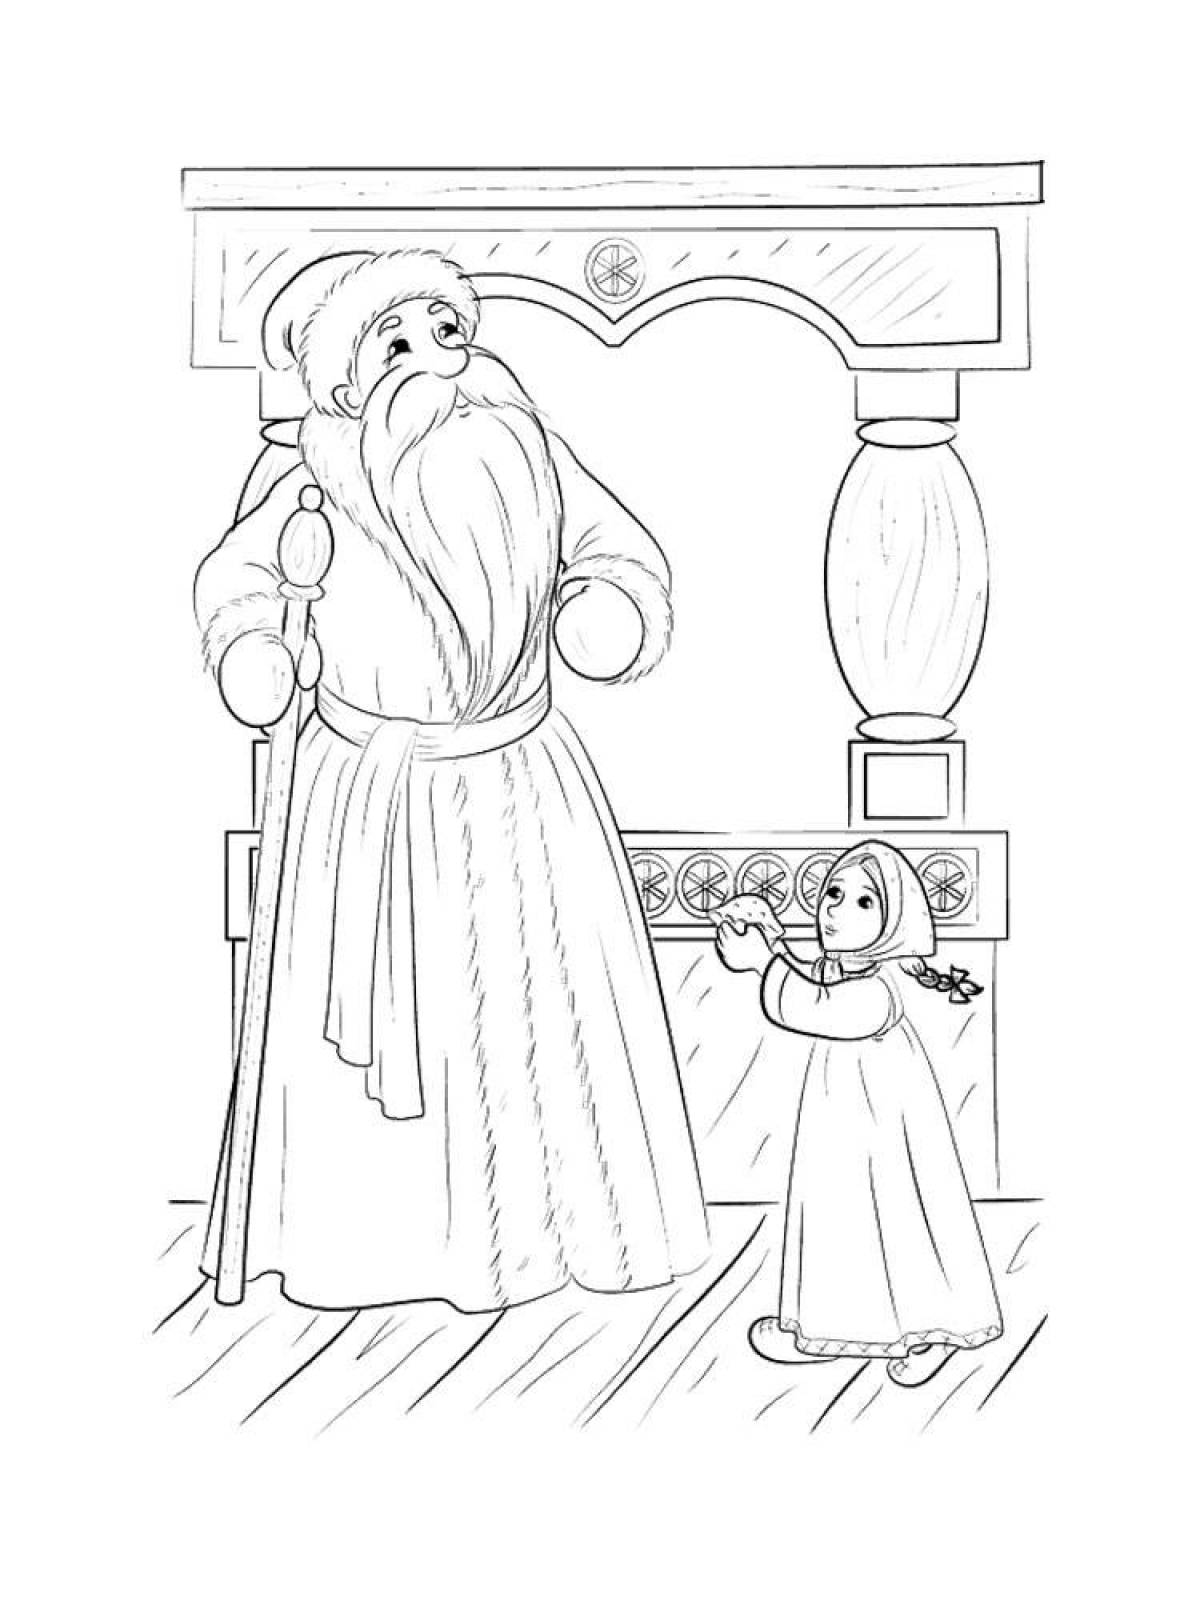 Иллюстрация к сказке Мороз Иванович Одоевский 3 класс